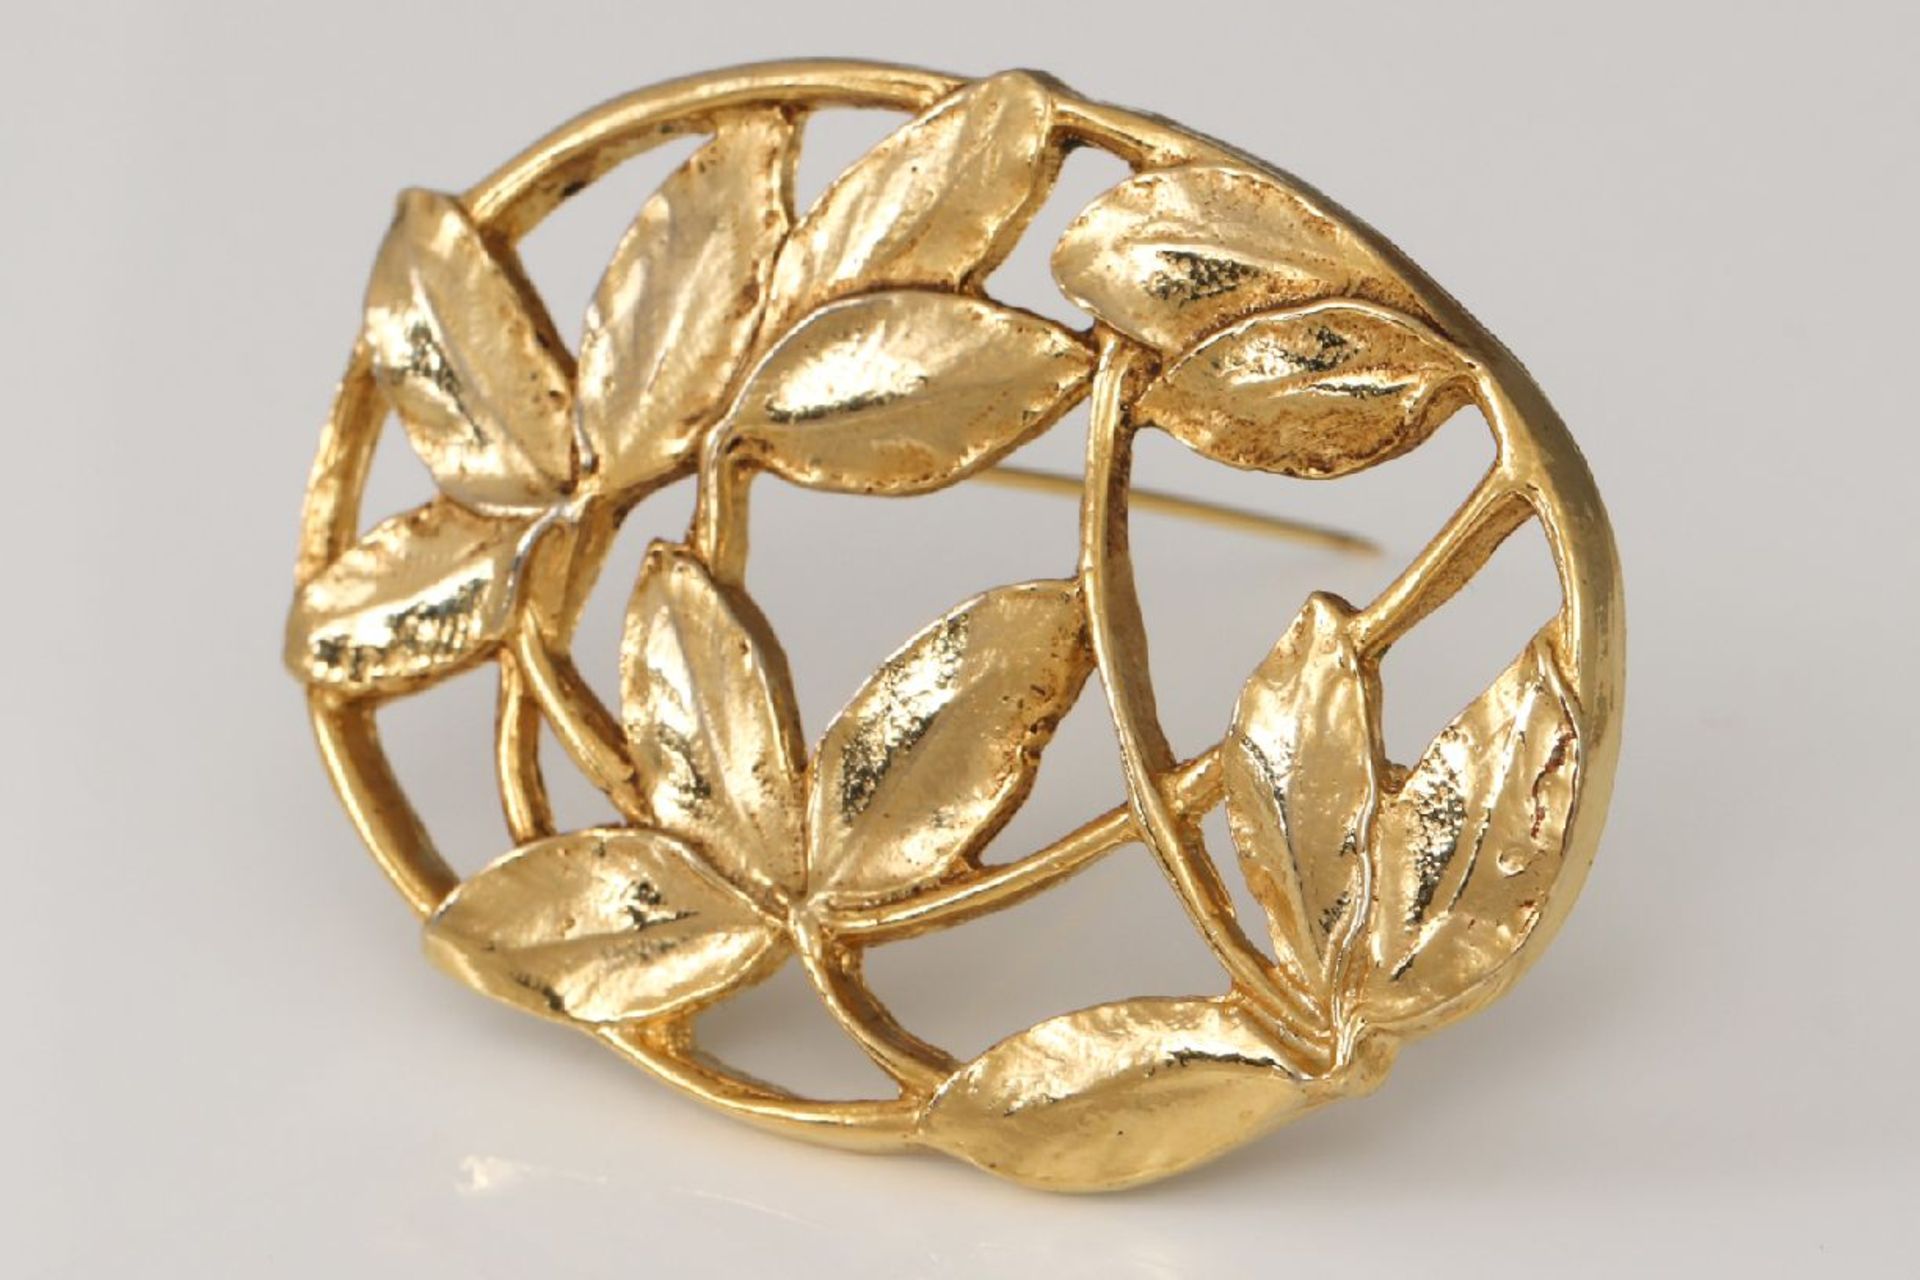 Brosche im Stile des Art NouveauMetall, goldfarben, ovale Form mit Blätter-Durchbruchdekor, - Image 3 of 6